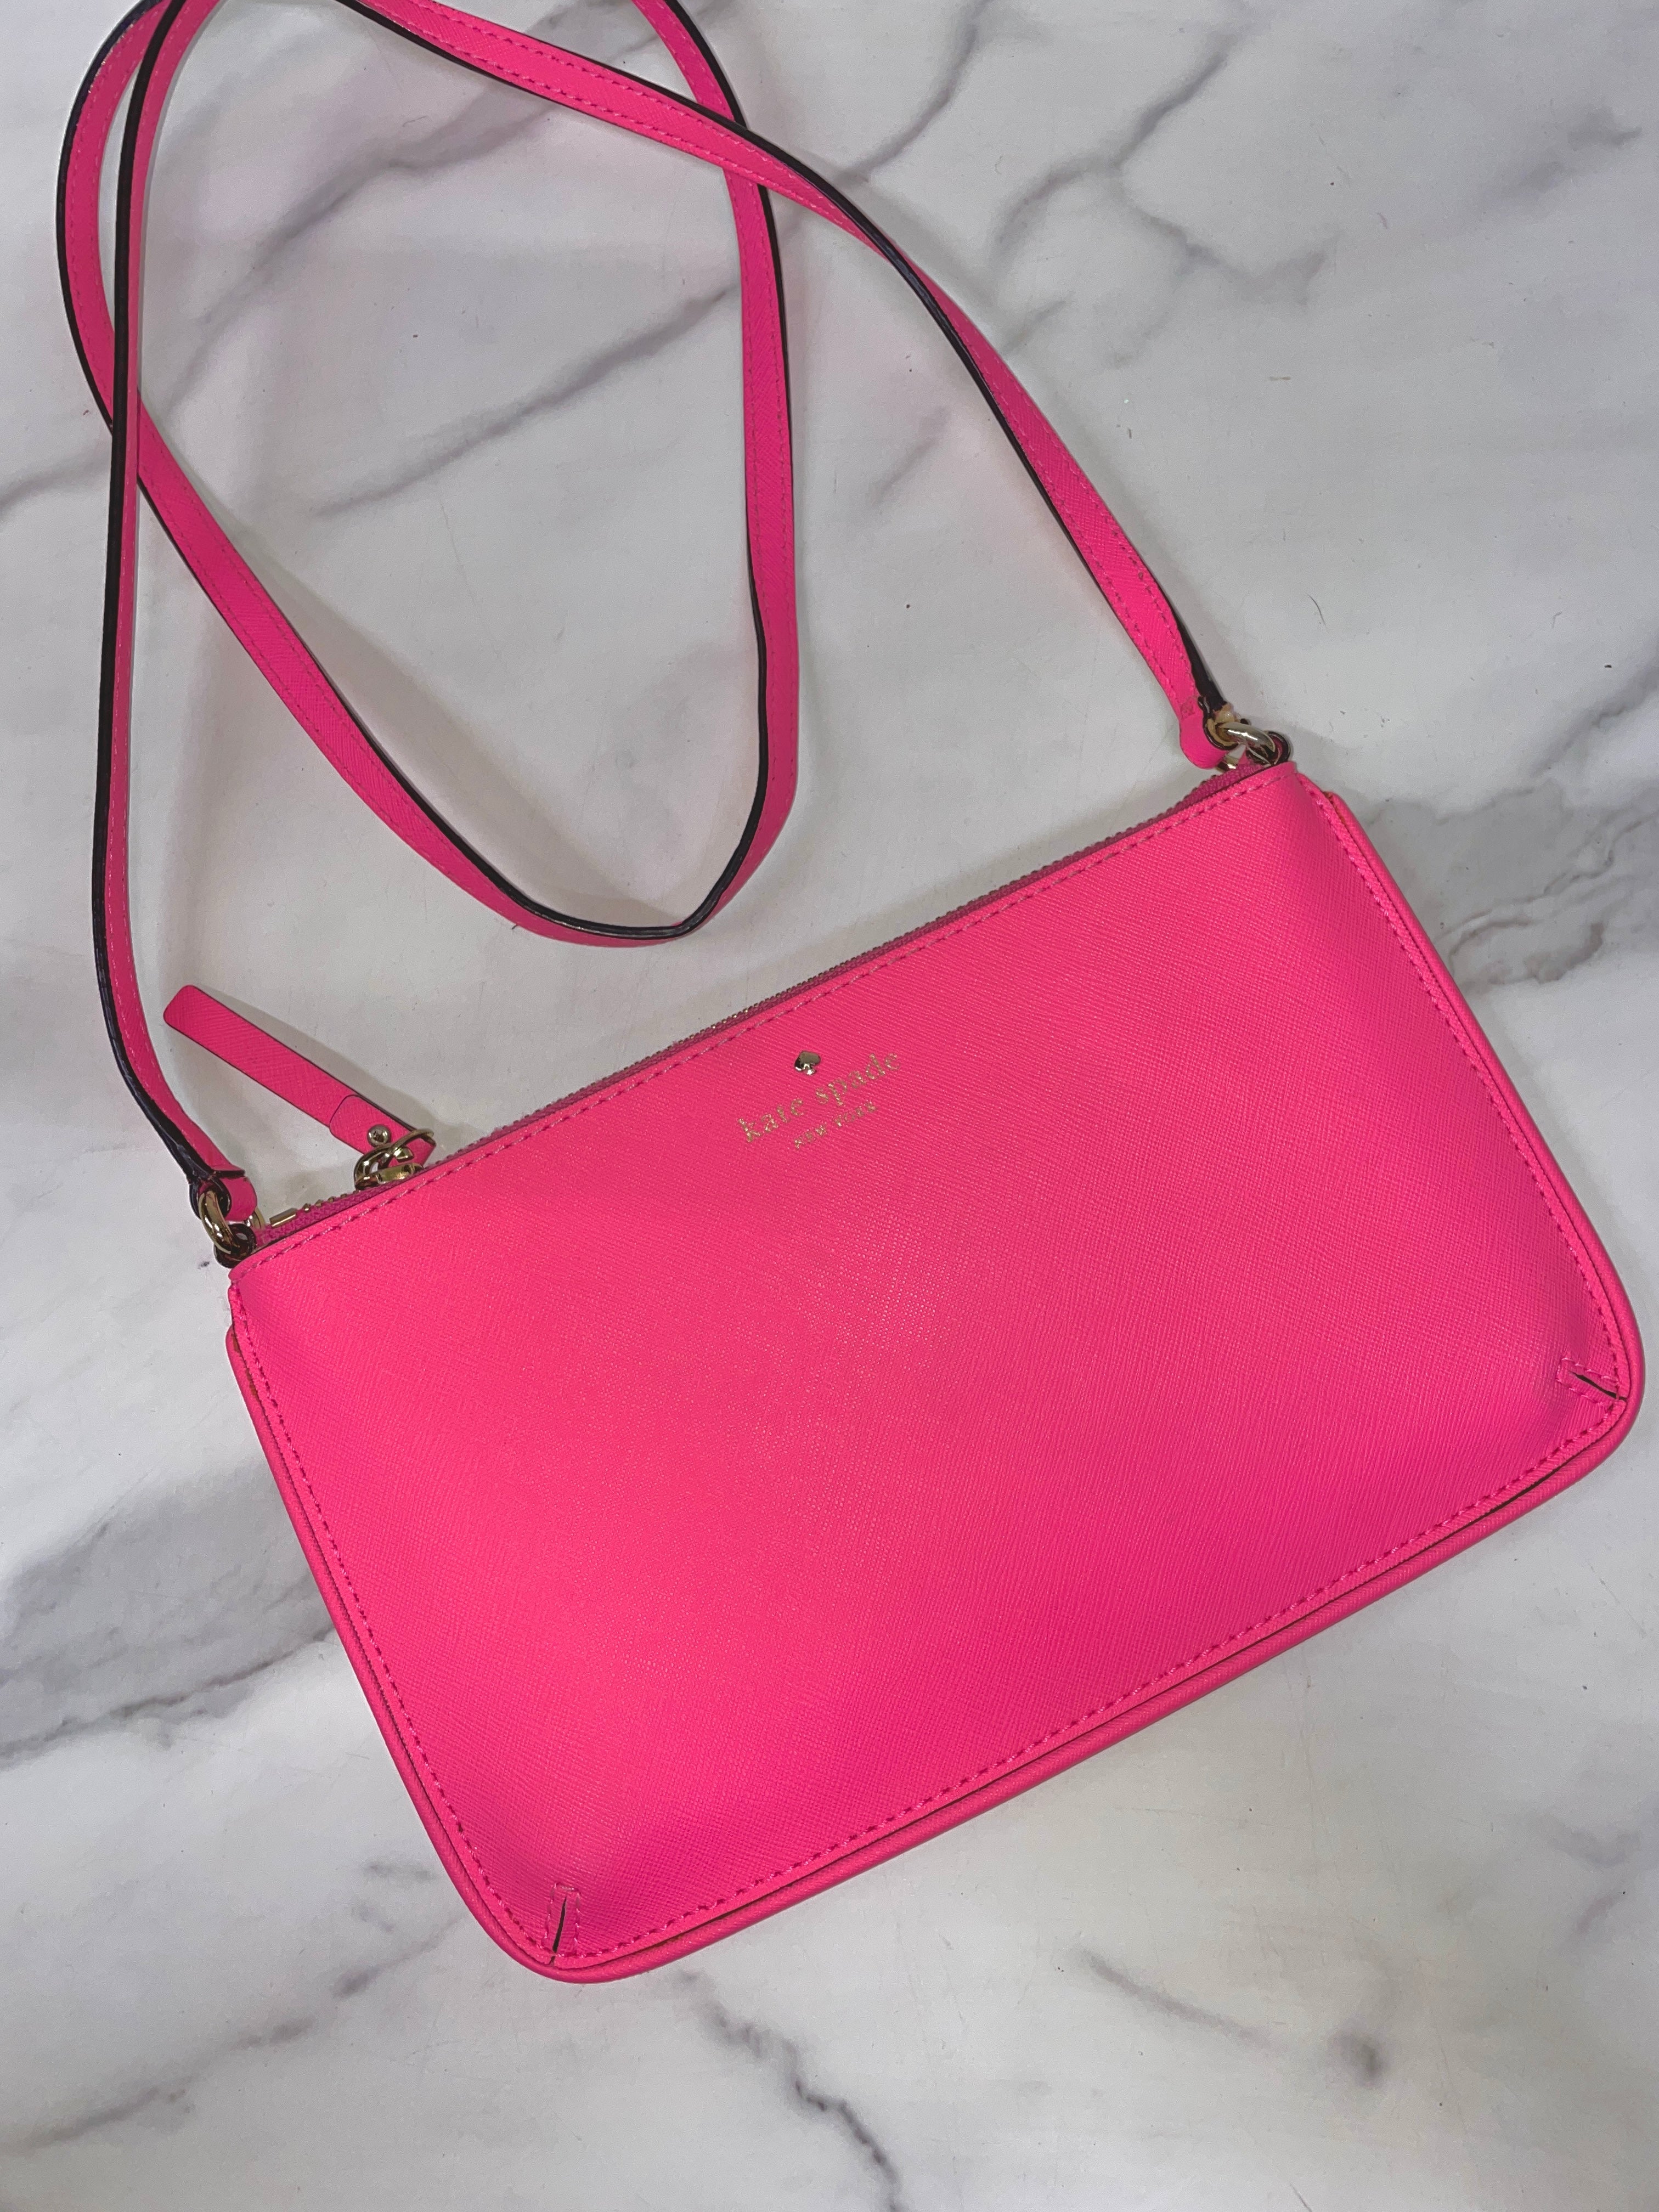 Kate Spade Pink Purse Handbag - Gem